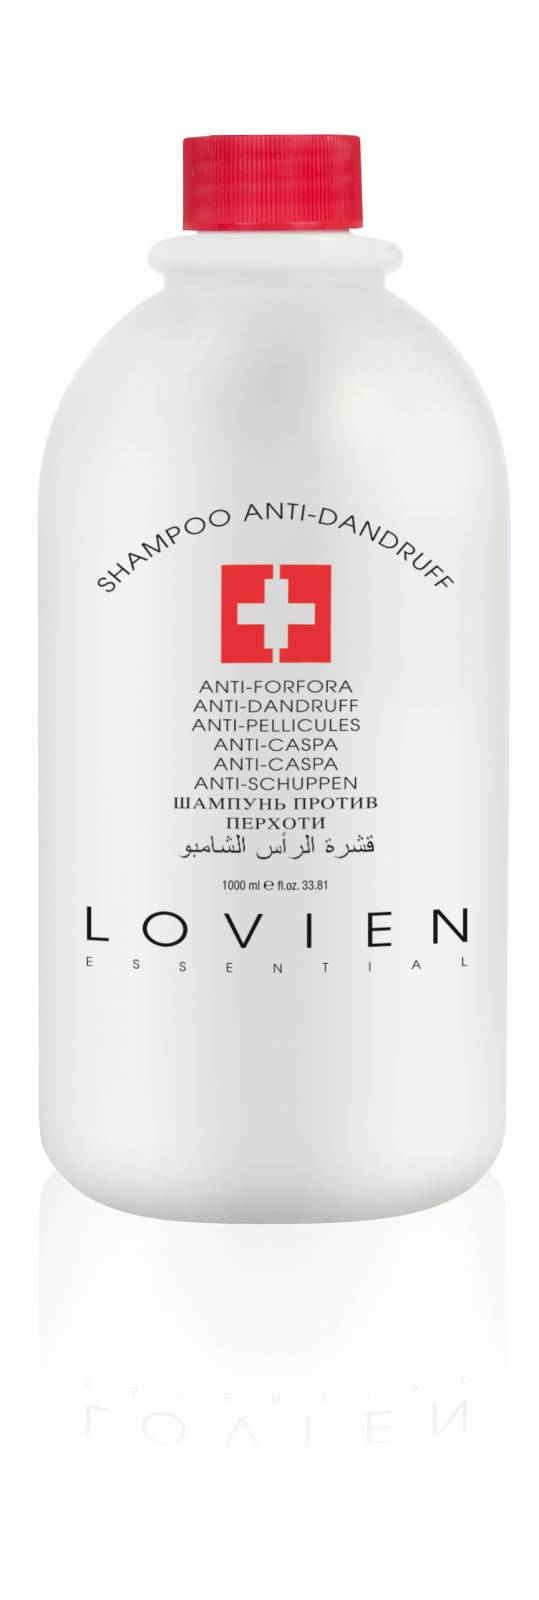 Lovien Shampoo Anti-Dandruff 1000 ml - šampon proti lupům